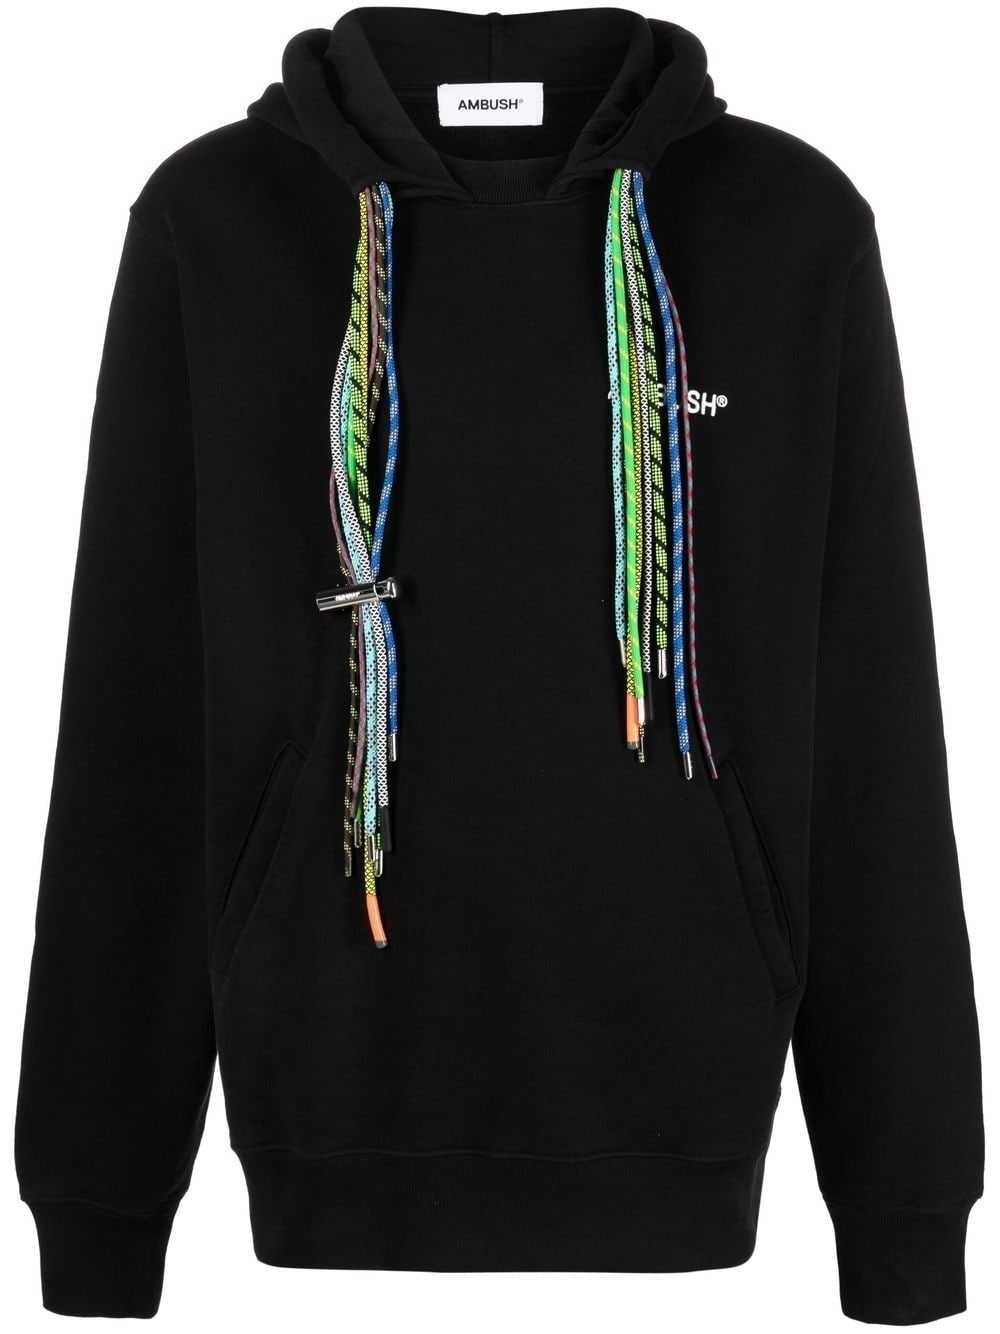 Image 1 of AMBUSH hoodie con cordones múltiples